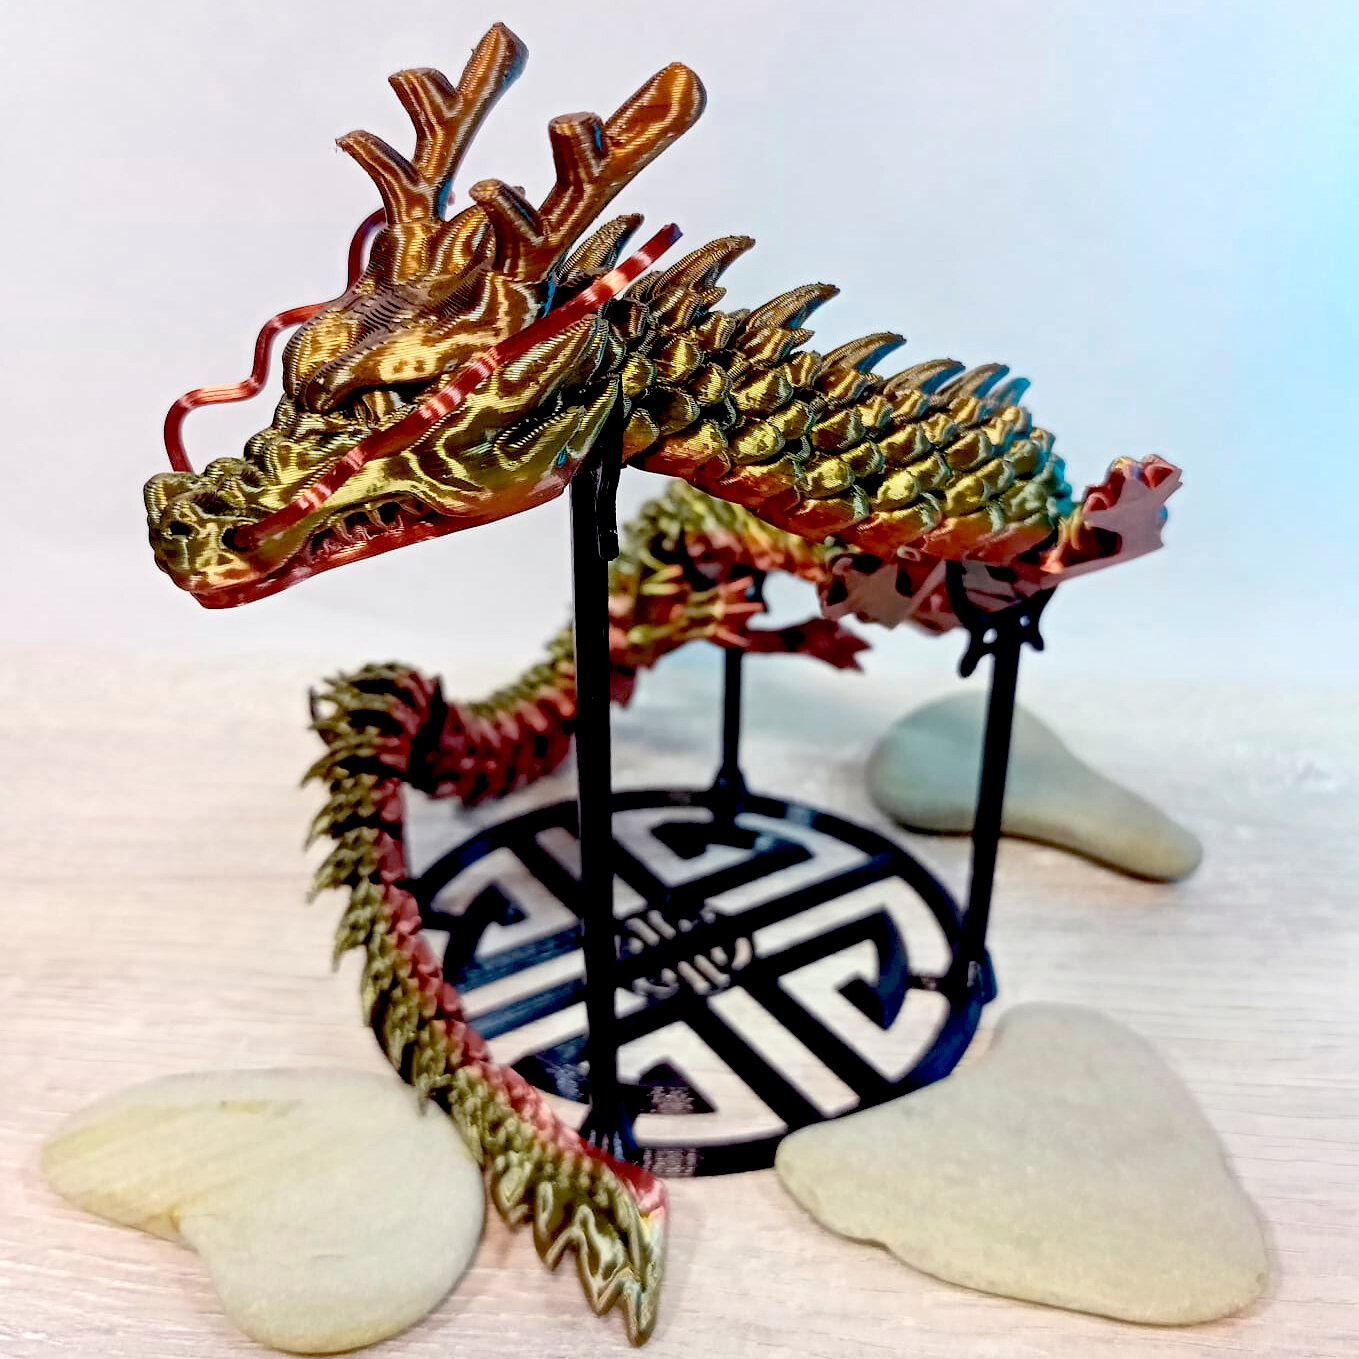 Дракон игрушка, 3D фигурка дракона, украшение для интерьера, гибкая шарнирная игрушка-антистресс, медно-бронзовый